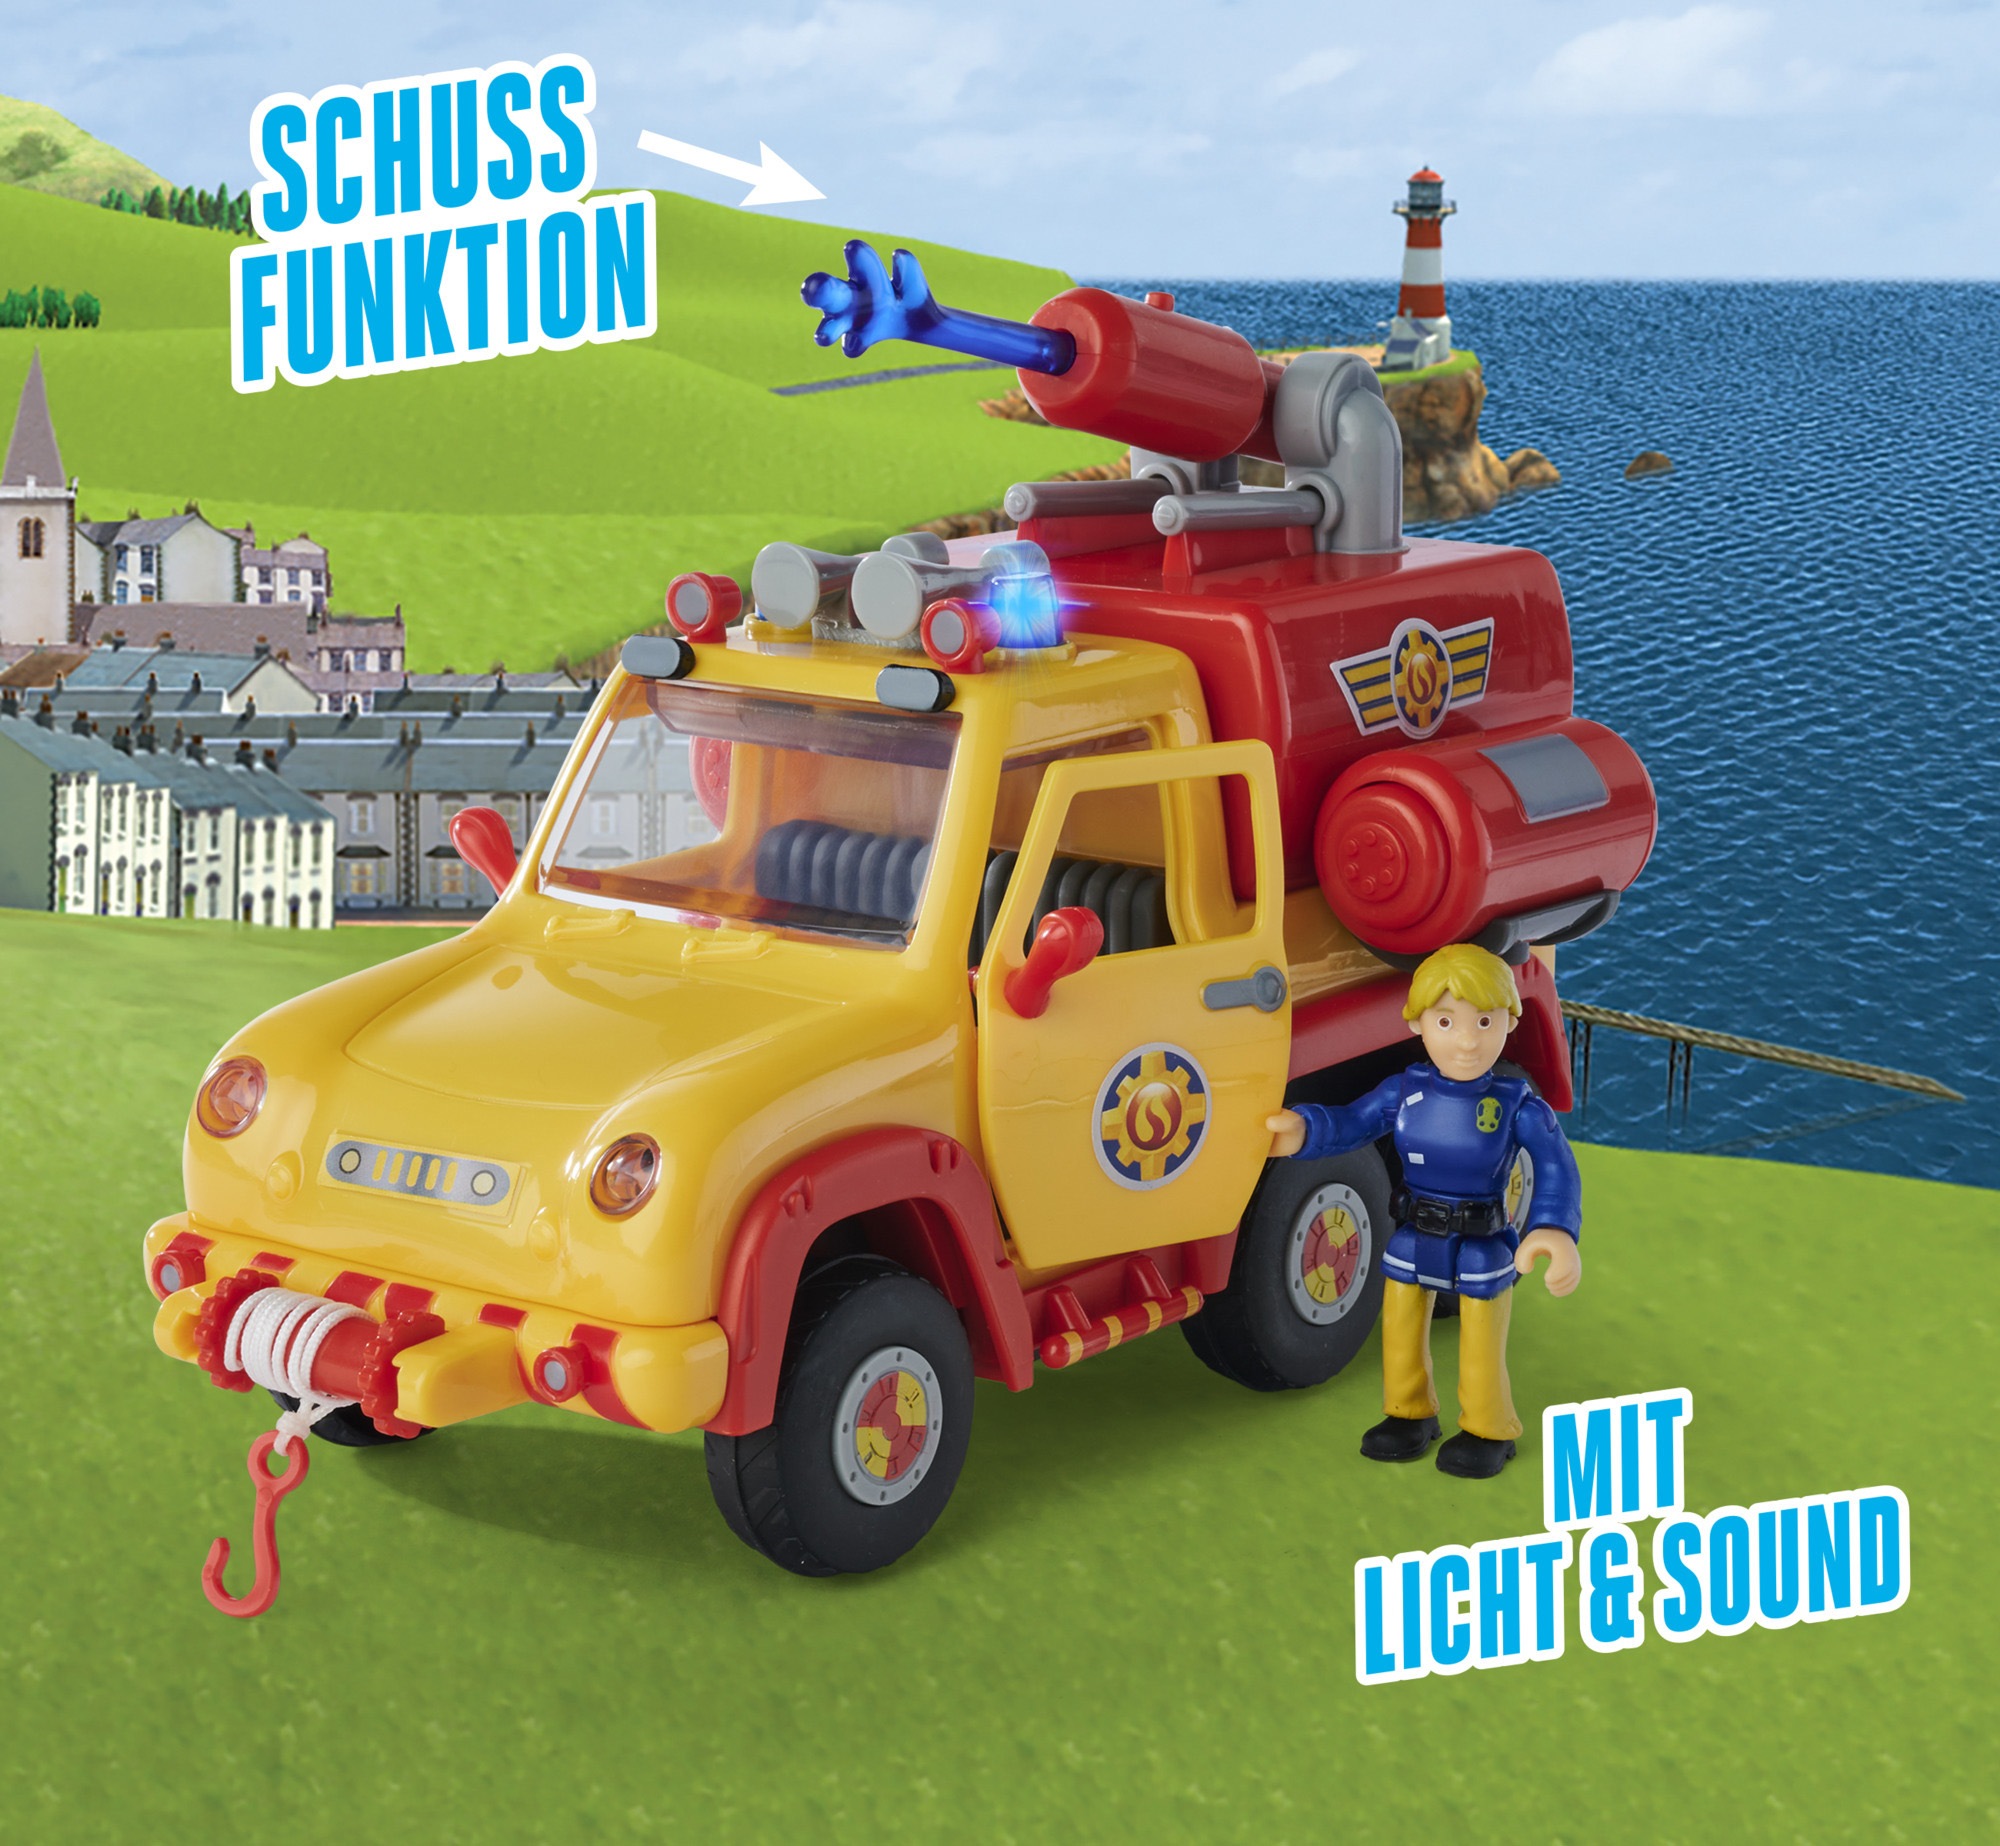 SIMBA Spielzeug-Feuerwehr »Feuerwehrmann Sam, Venus 2.0«, mit Sound- und Lichteffekten